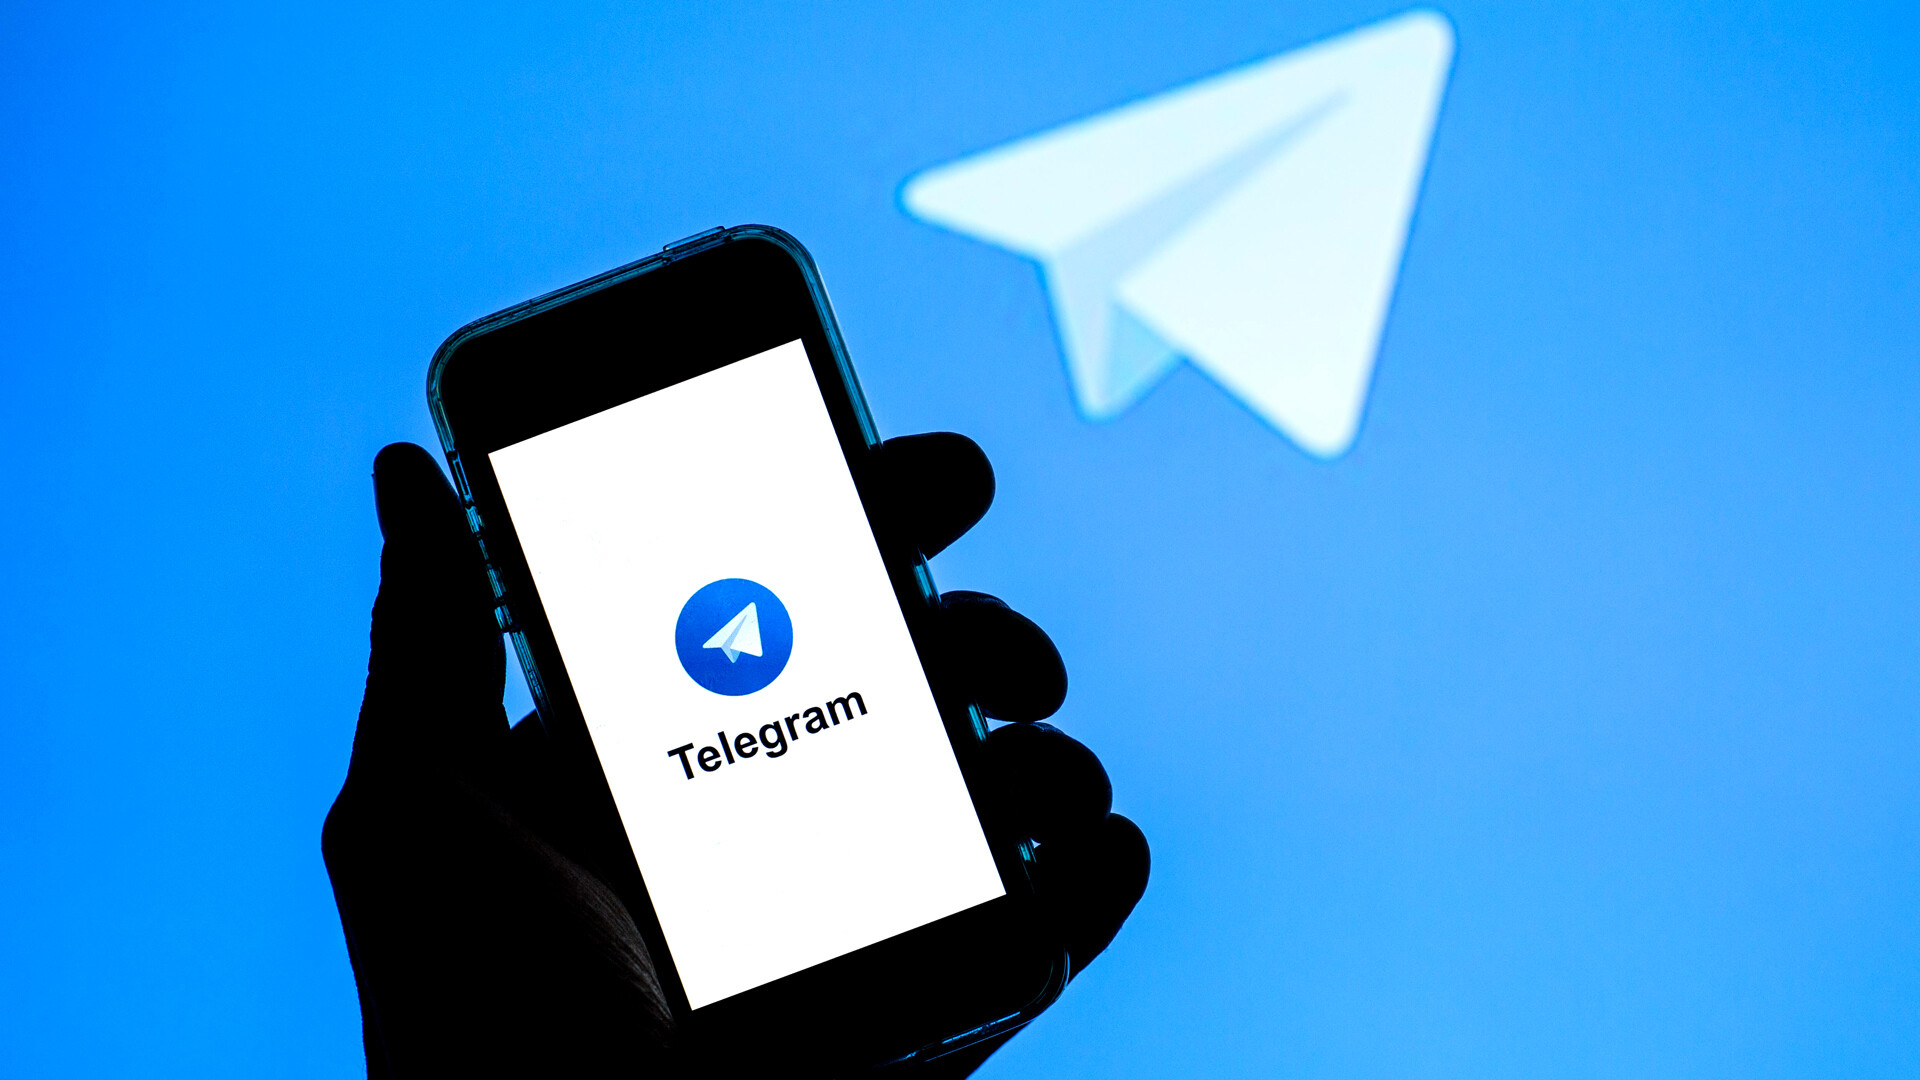 Скачать приложение телеграмм на русском бесплатно на андроид и установить без регистрации на телефон фото 97